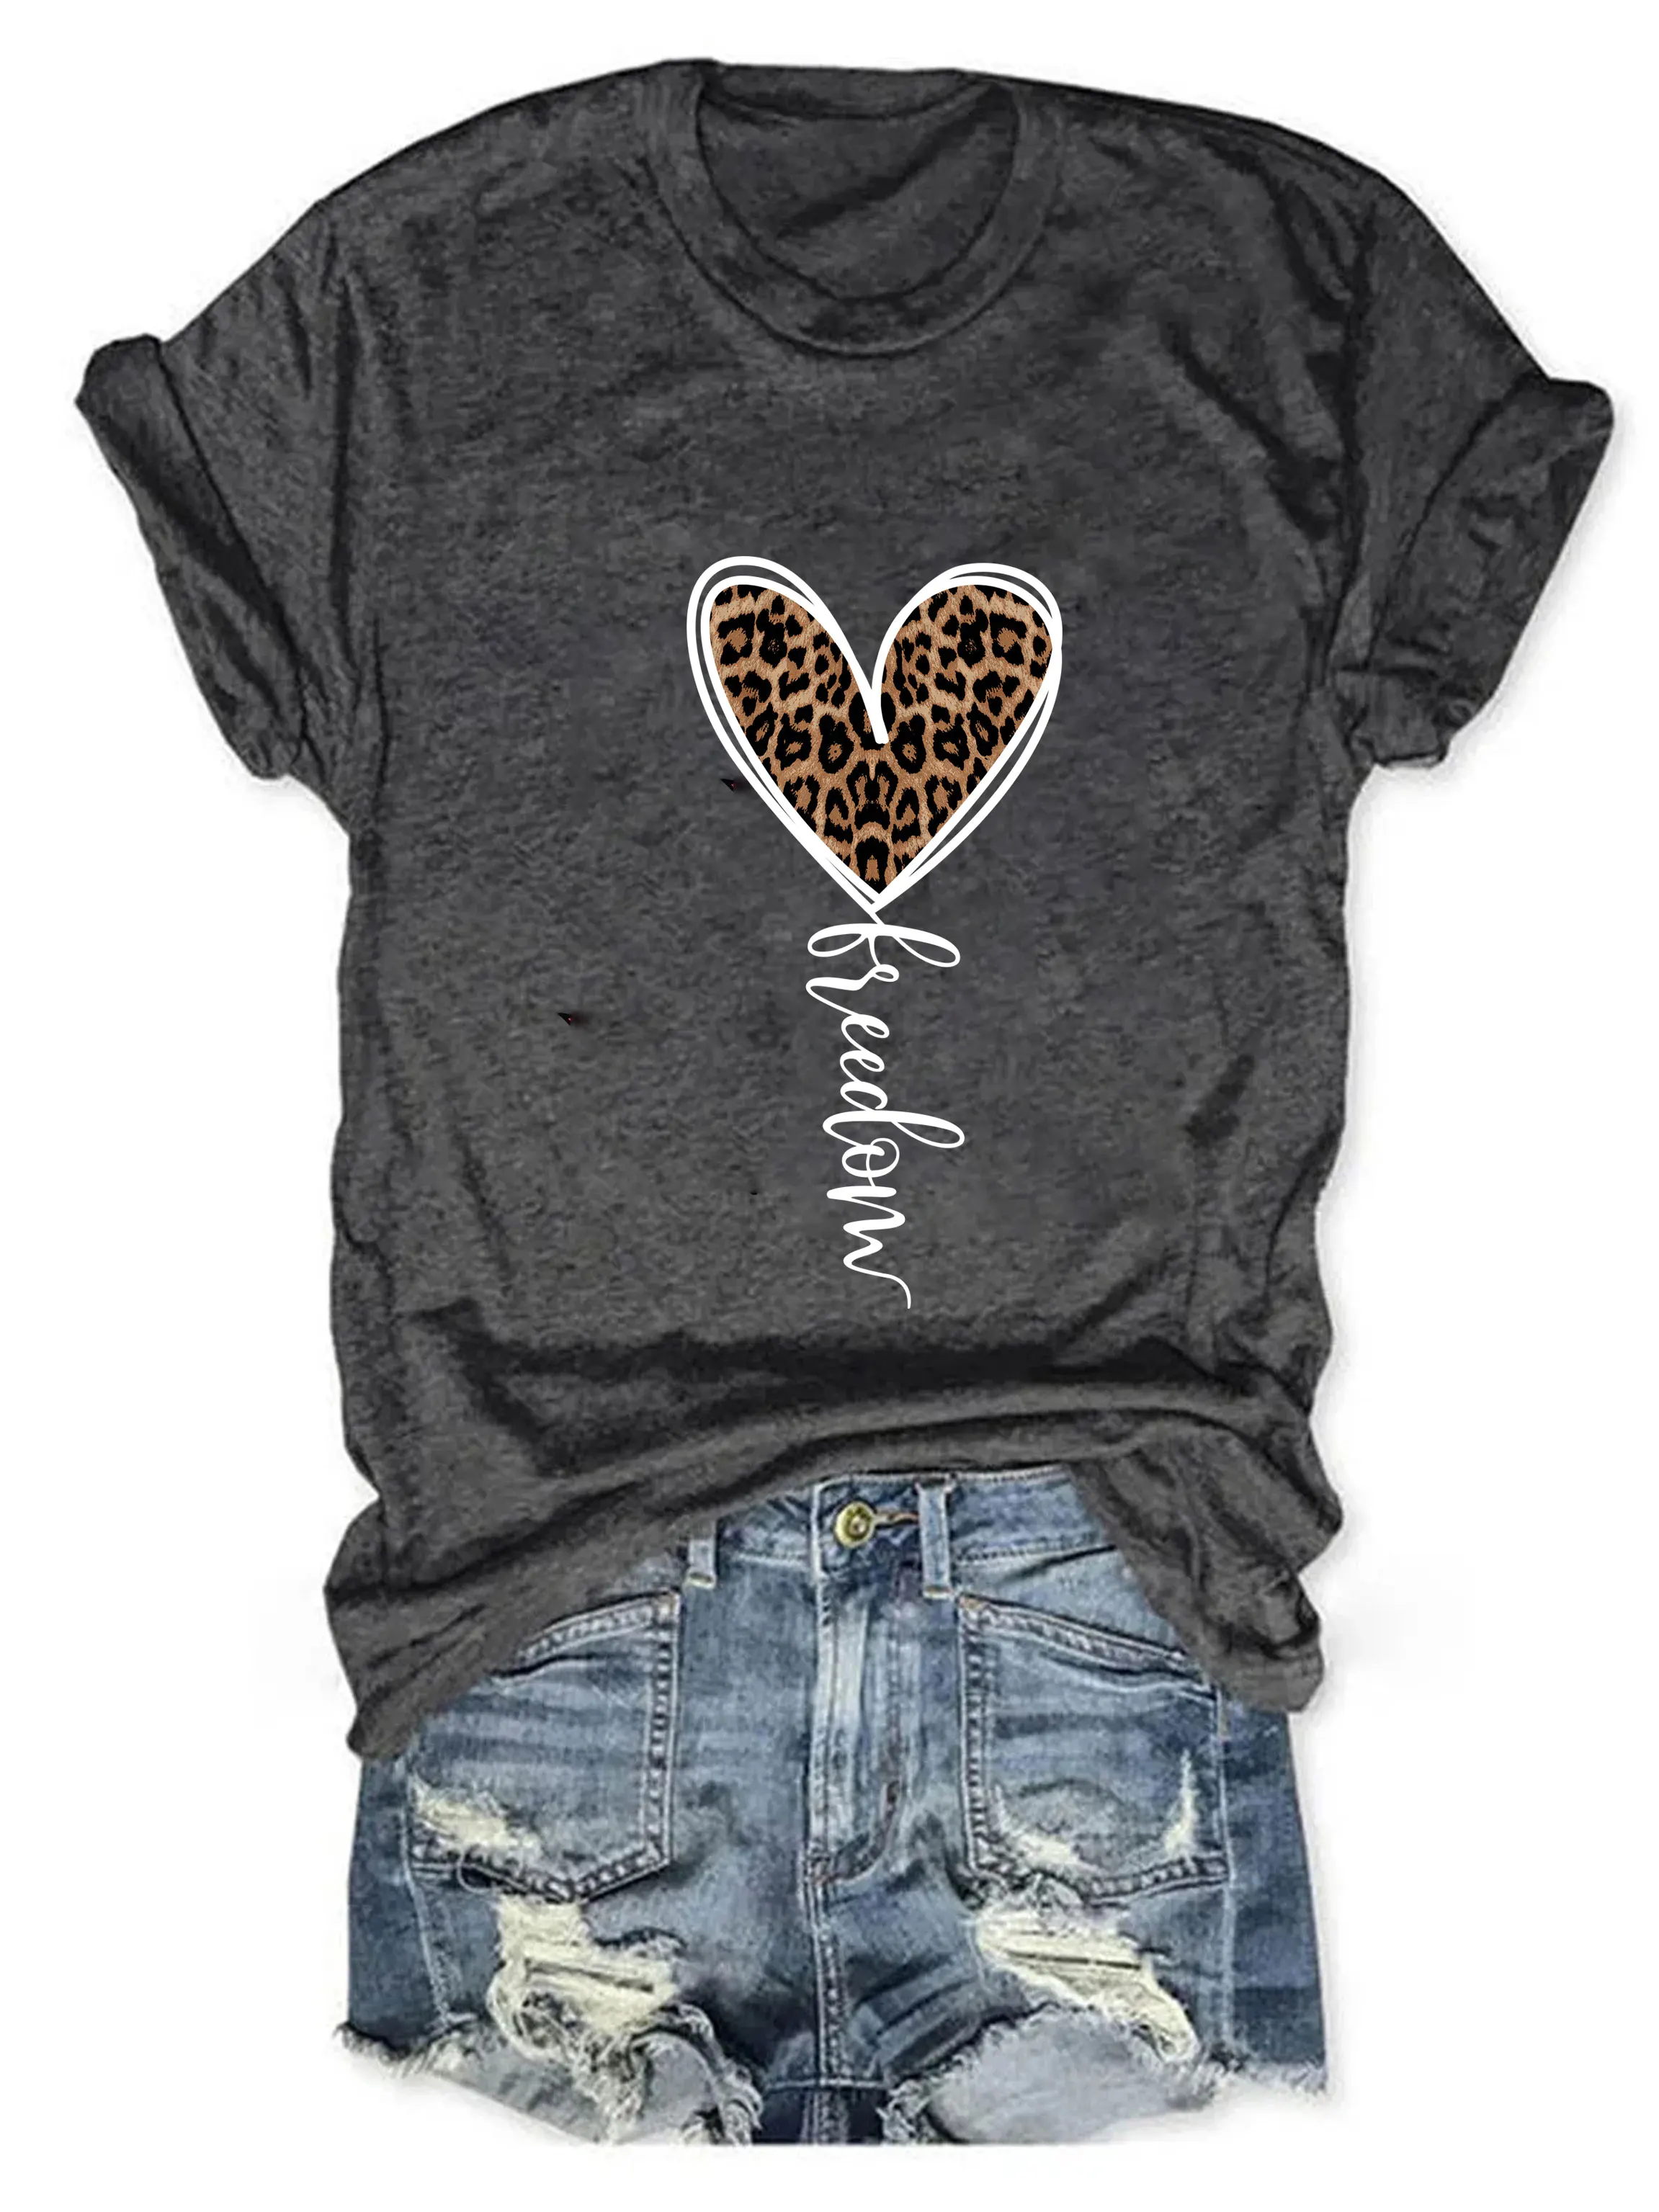 

Рубашка Freedom, леопардовая рубашка с принтом сердца, женская рубашка с коротким рукавом на День Независимости, забавная Летняя женская футболка